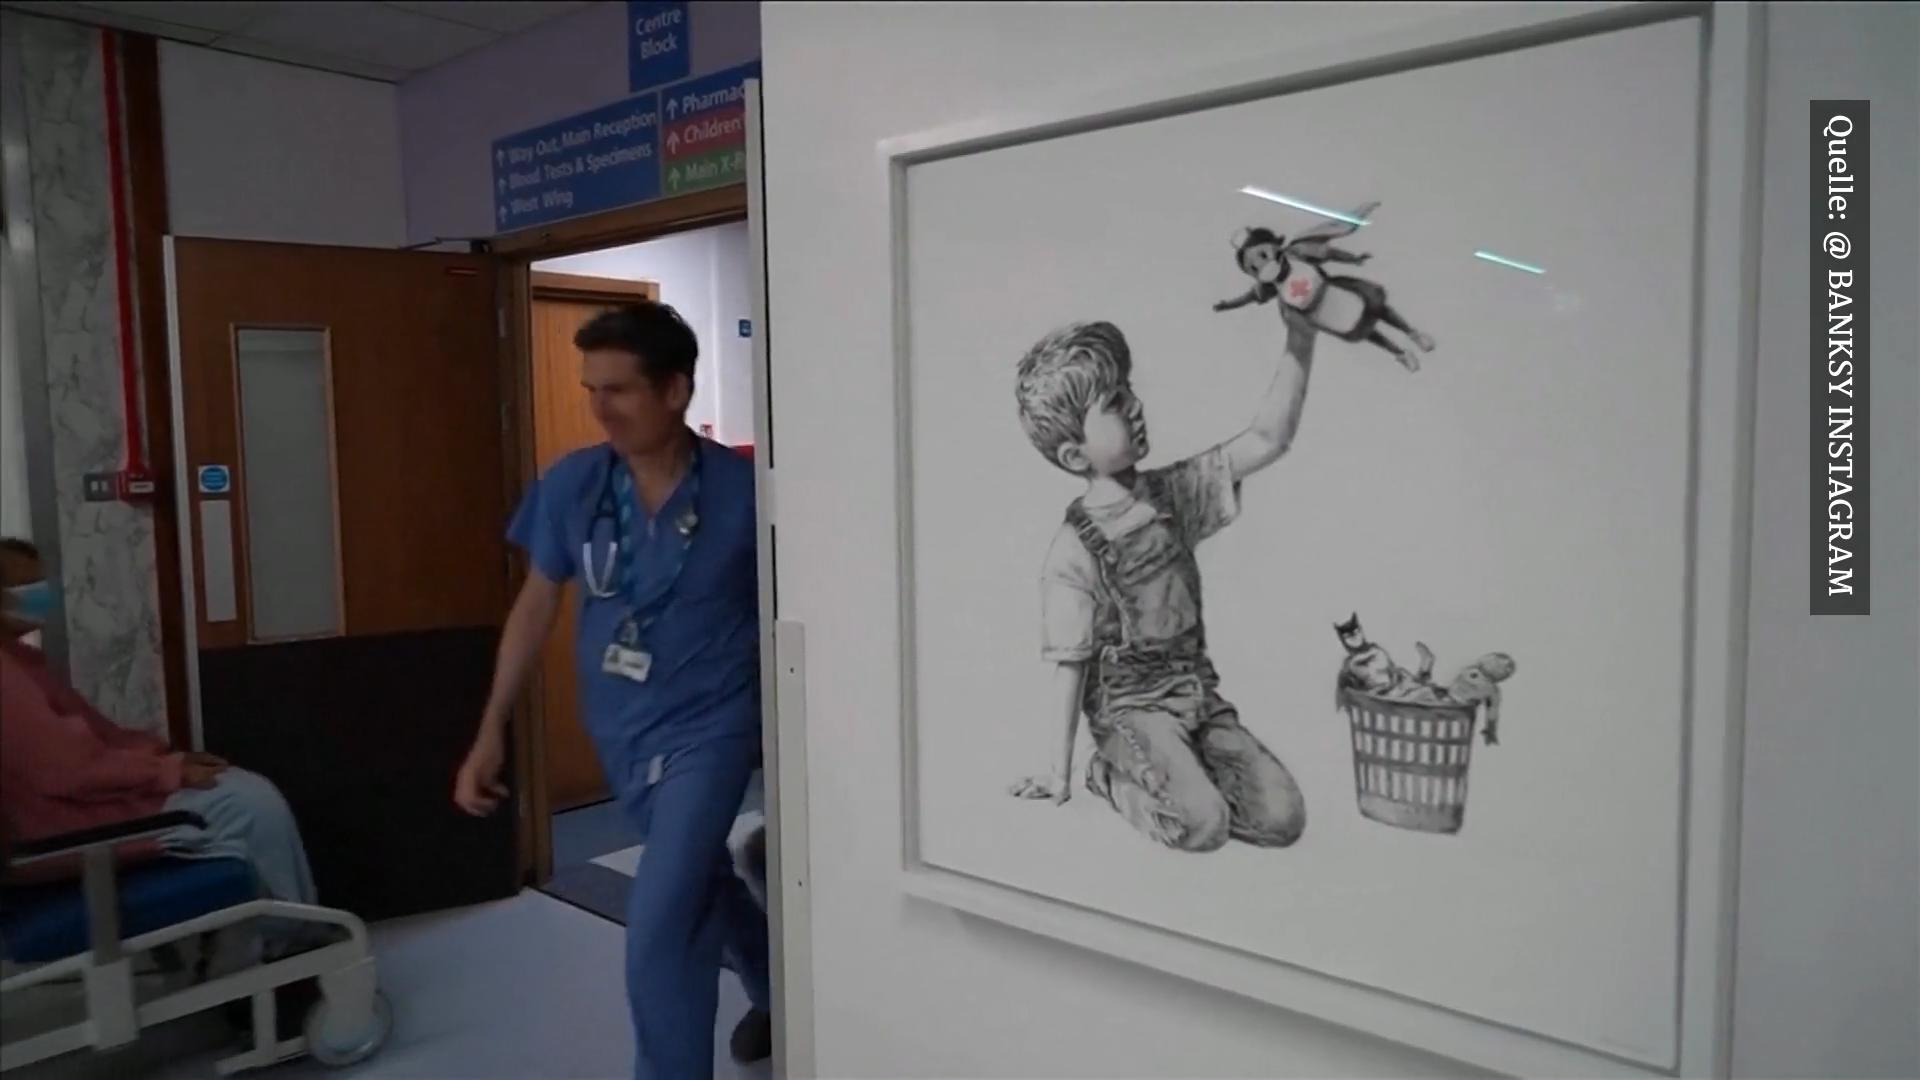 Neues Banksy-Kunstwerk taucht in britischem Krankenhaus auf Corona-Krise